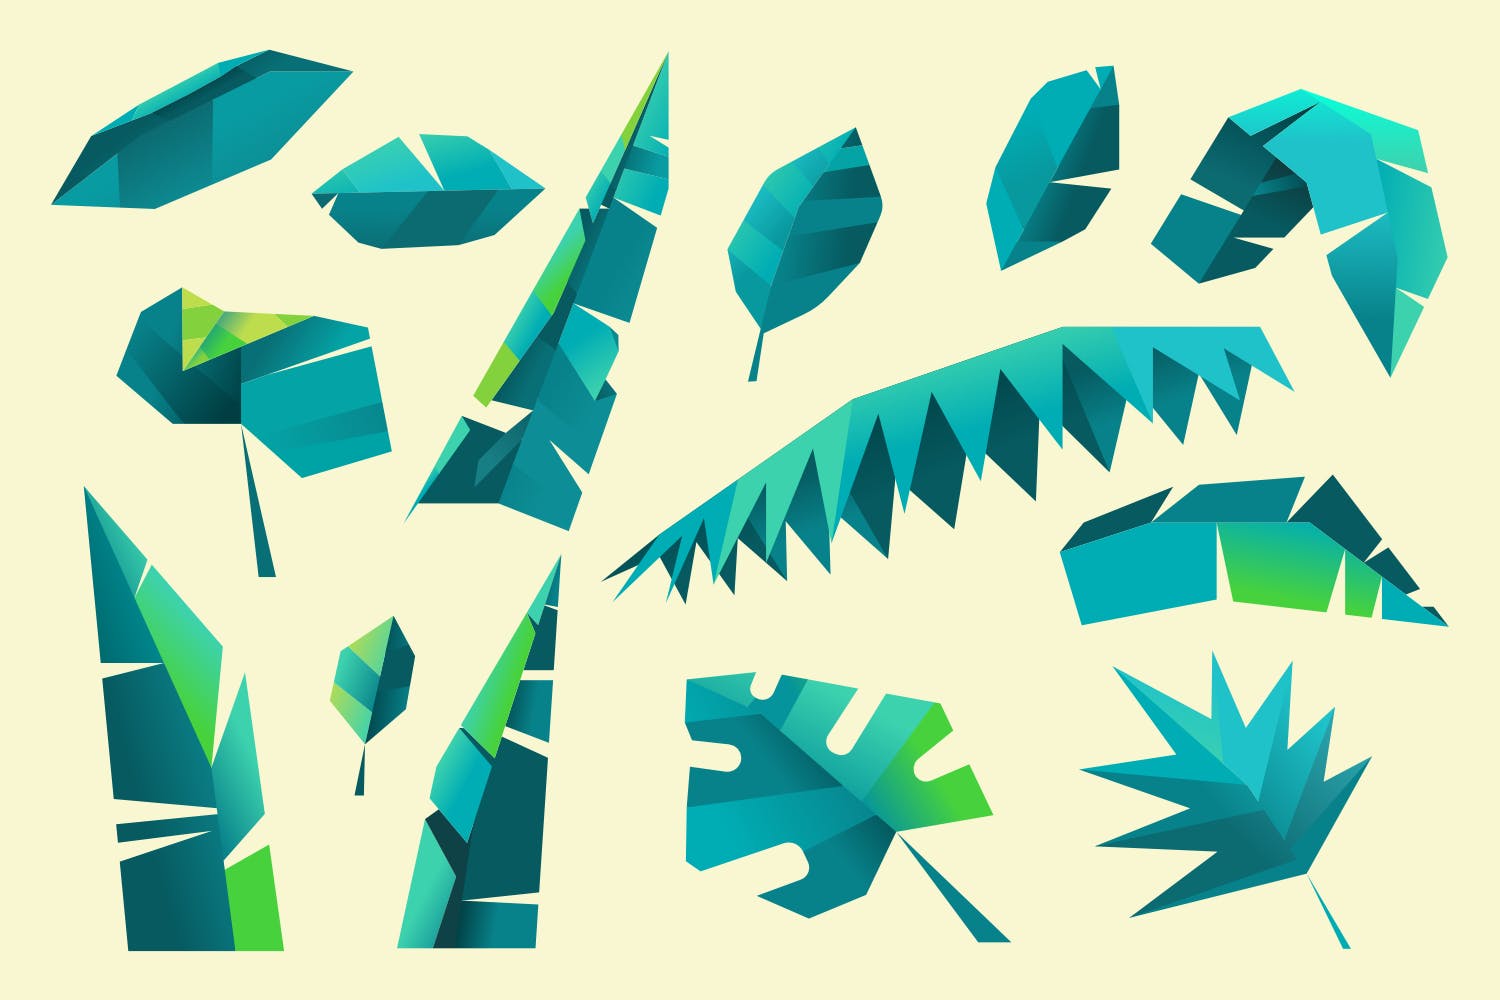 芭蕉叶&多边形叶子剪贴画素材 Leaf and foliage polygon collection插图